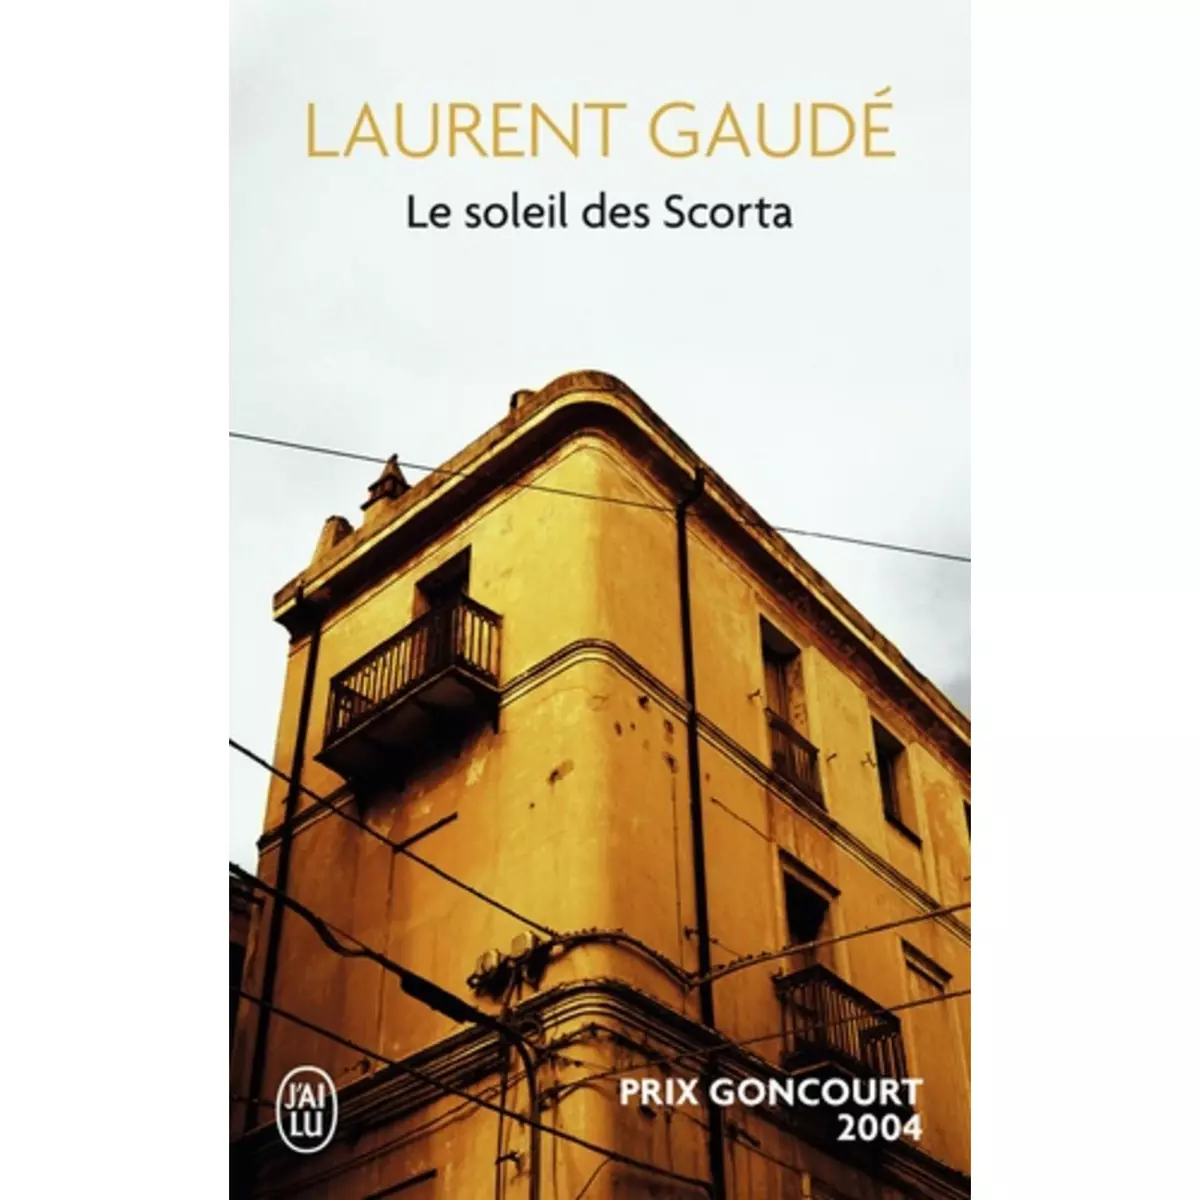  LE SOLEIL DES SCORTA, Gaudé Laurent